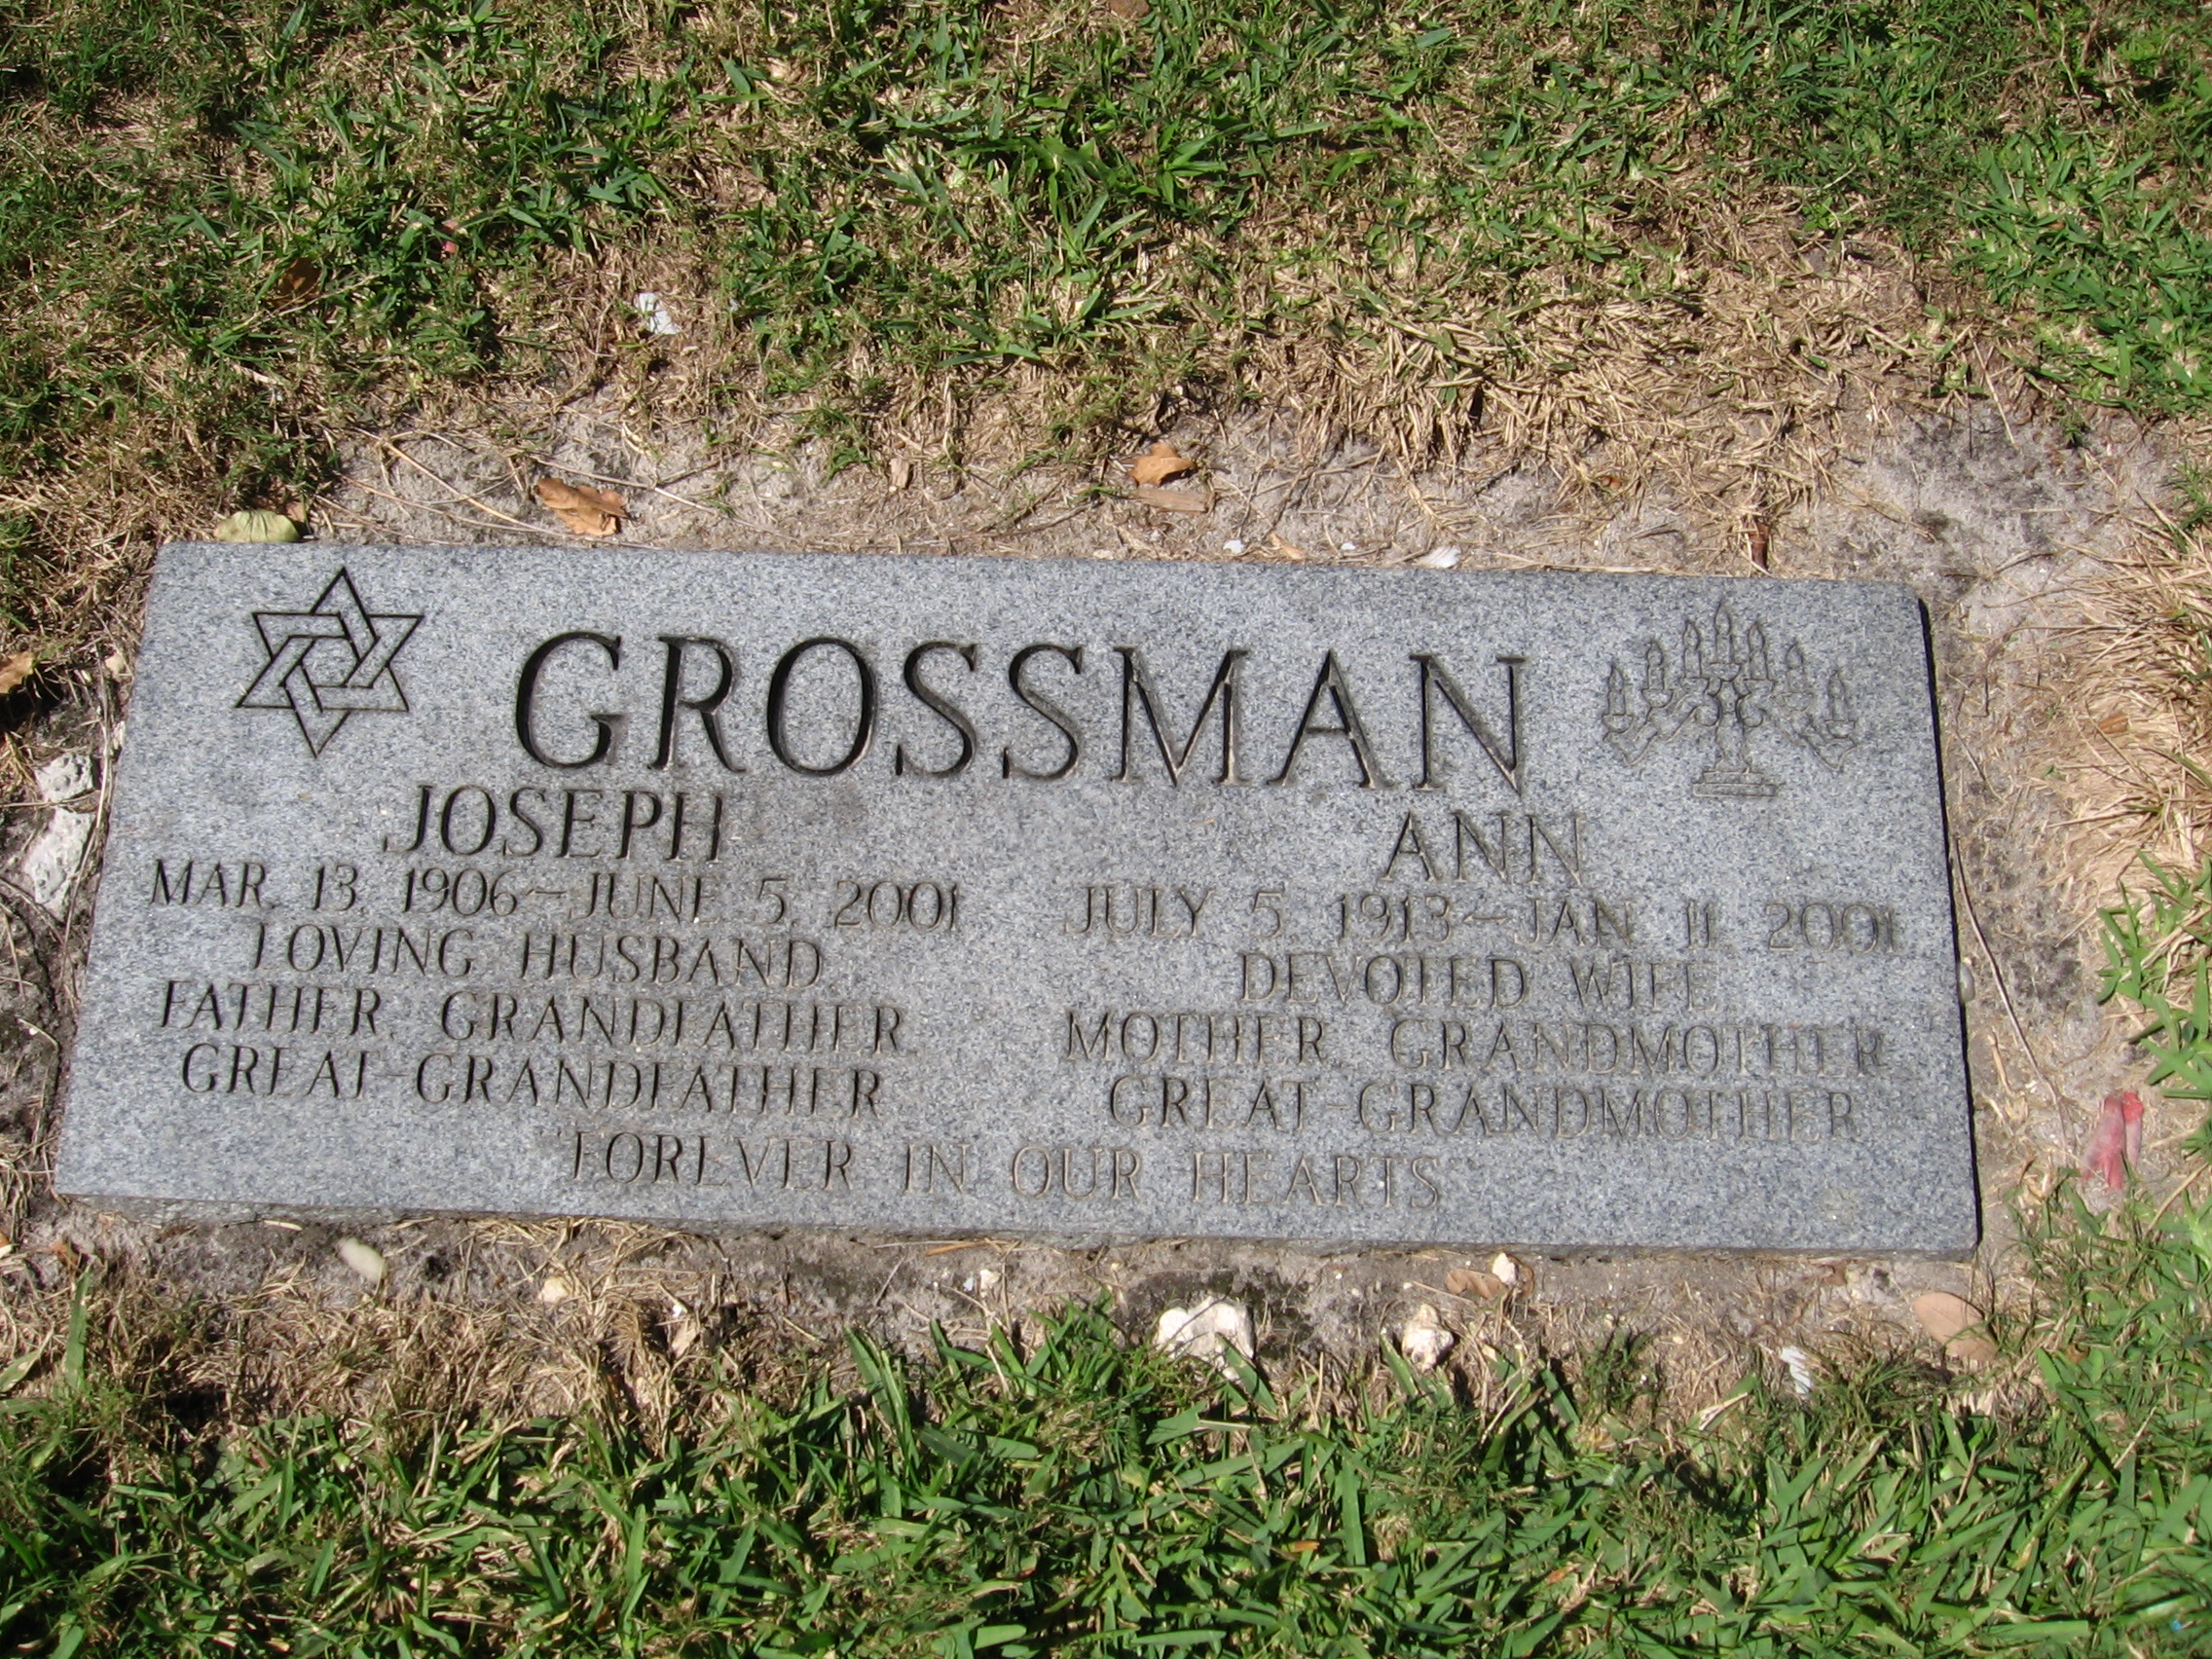 Joseph Grossman